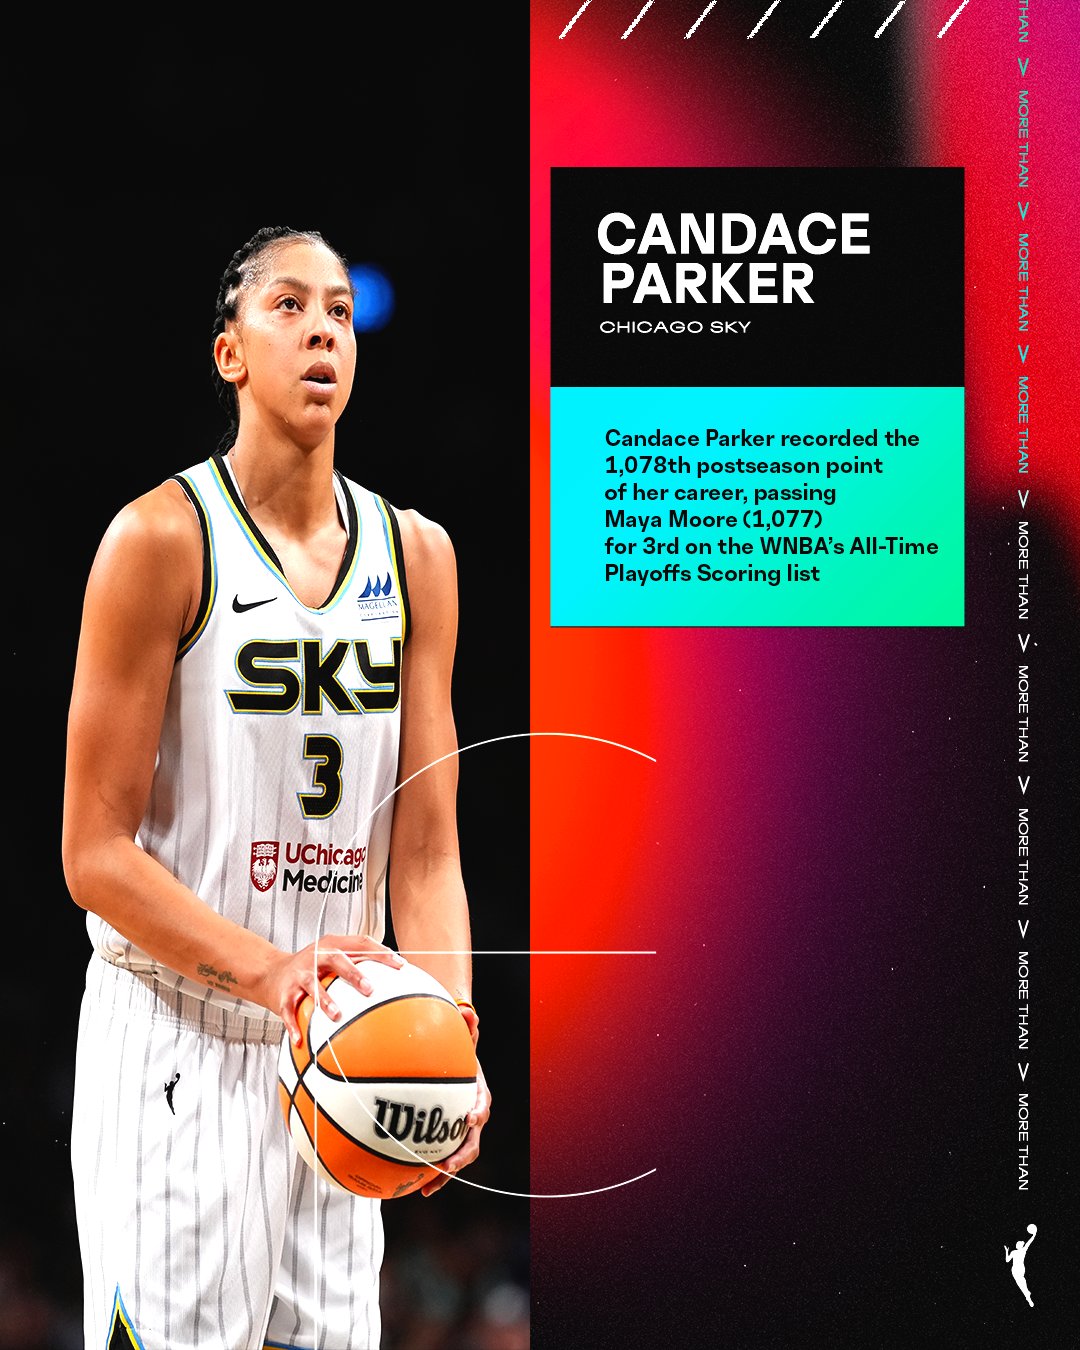 里程碑！坎迪斯-帕克季后赛得分超玛雅-摩尔 升至WNBA历史第三